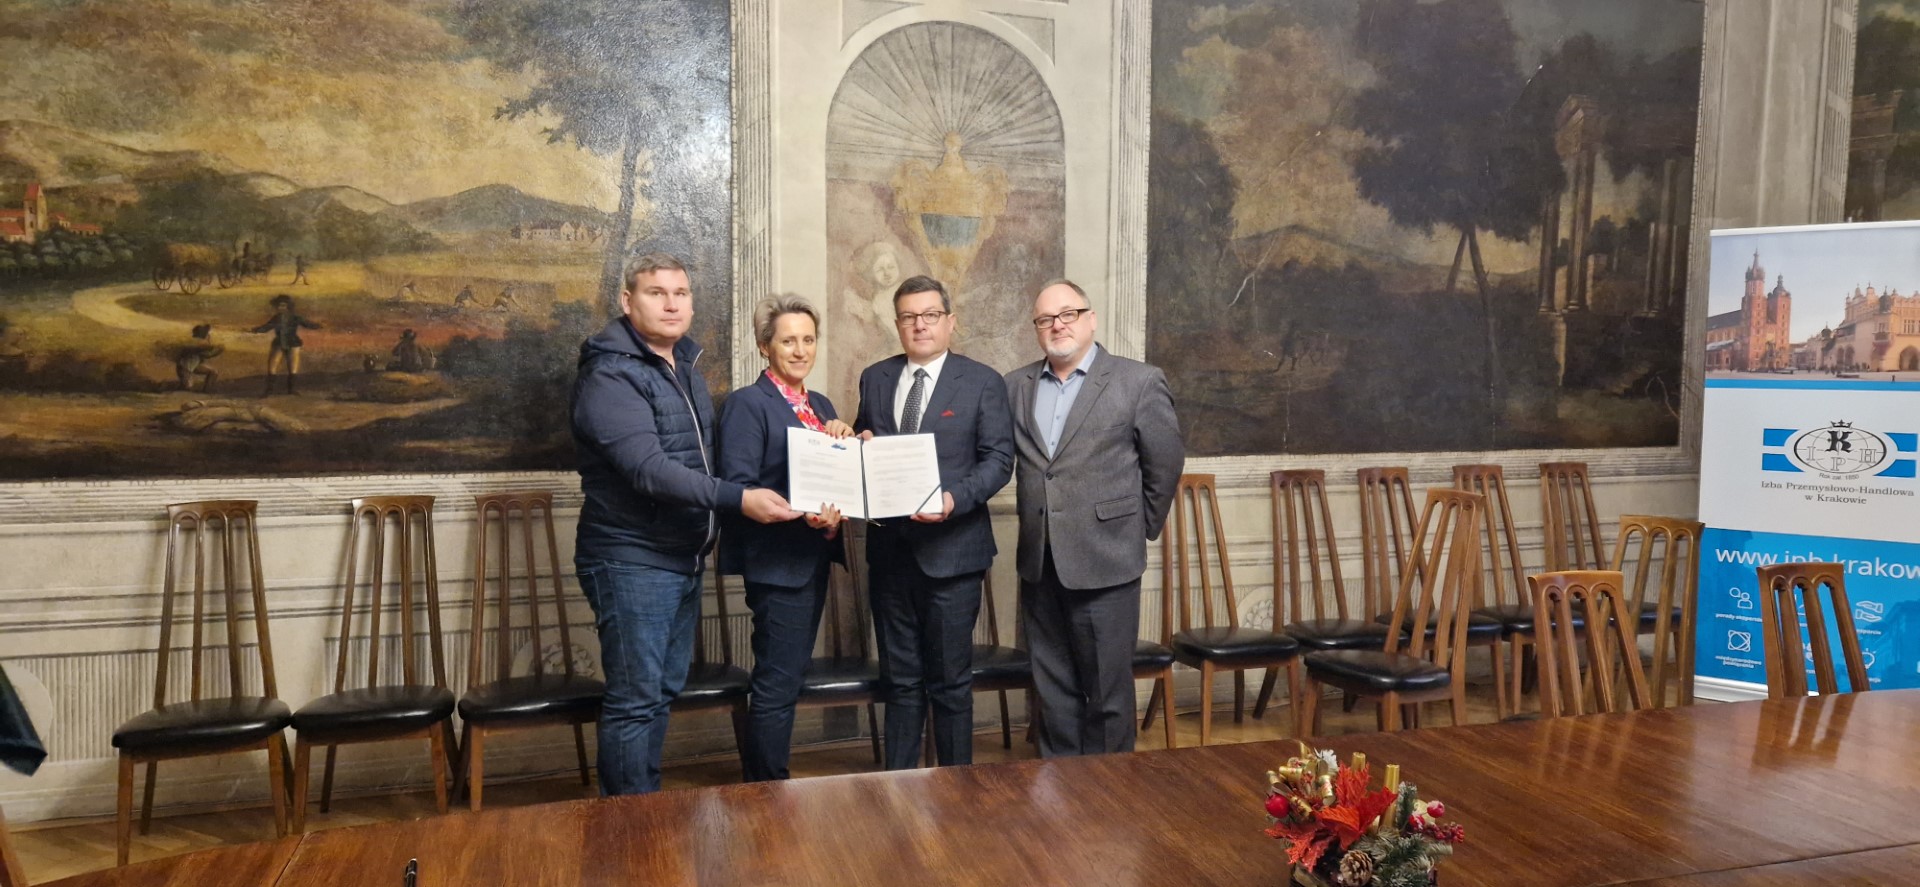 Izba Przemysłowo-Handlowa w Krakowie podpisała Porozumienie o współpracy z Izbą Gospodarczą Dorzecza Raby z siedzibą w Dobczycach